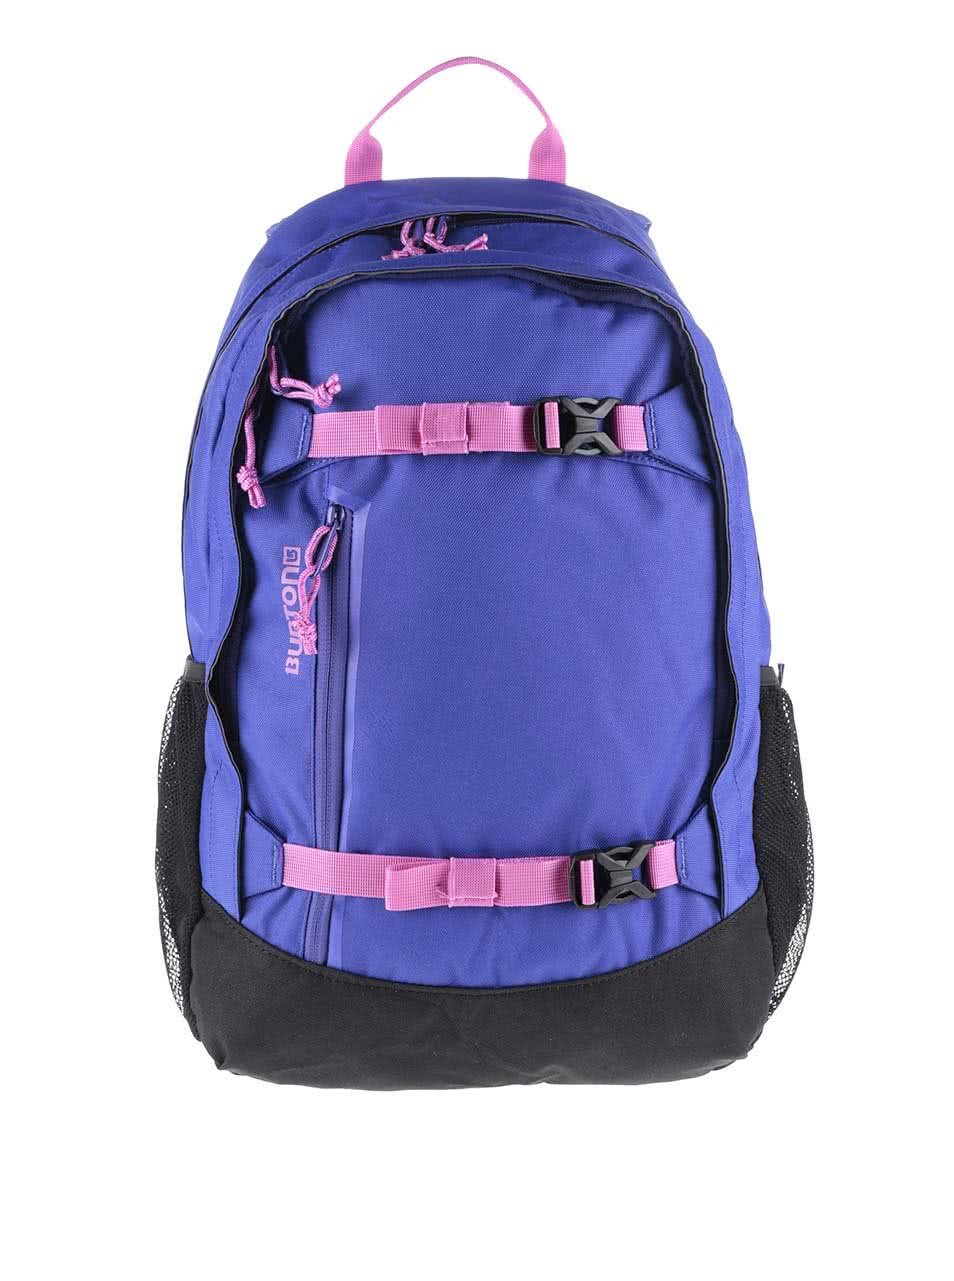 Černo-modrý dětský batoh s růžovými detaily Burton Hiker 20 l